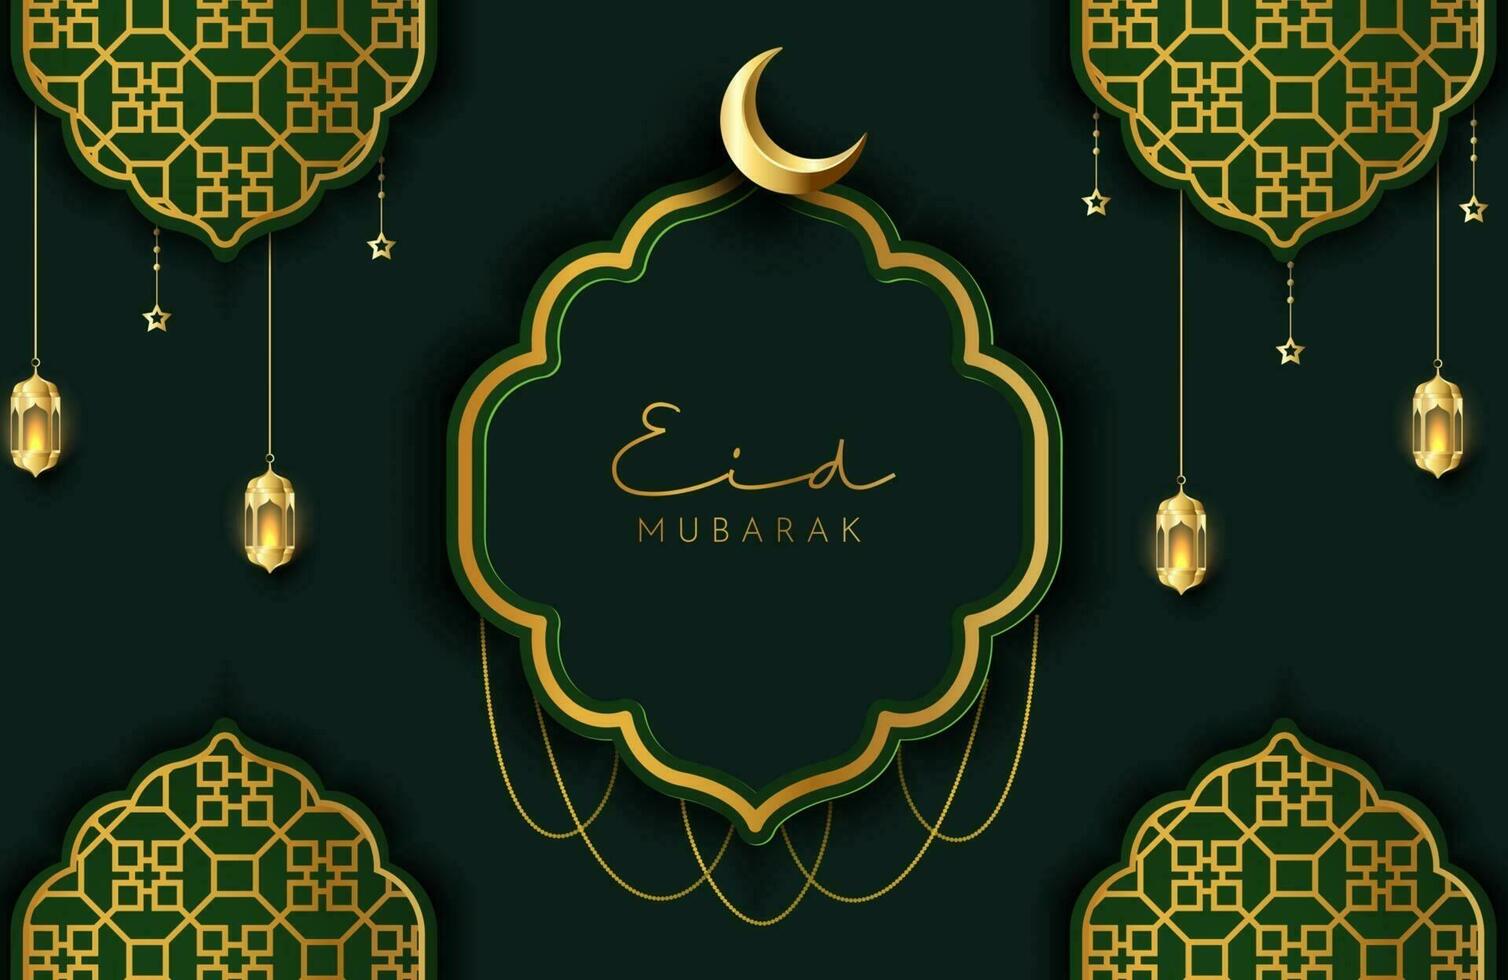 eid mubarak achtergrond in luxe stijl vectorillustratie van donkergroen islamitisch ontwerp met gouden lantaarn en wassende maan voor islamitische heilige maand vieringen vector